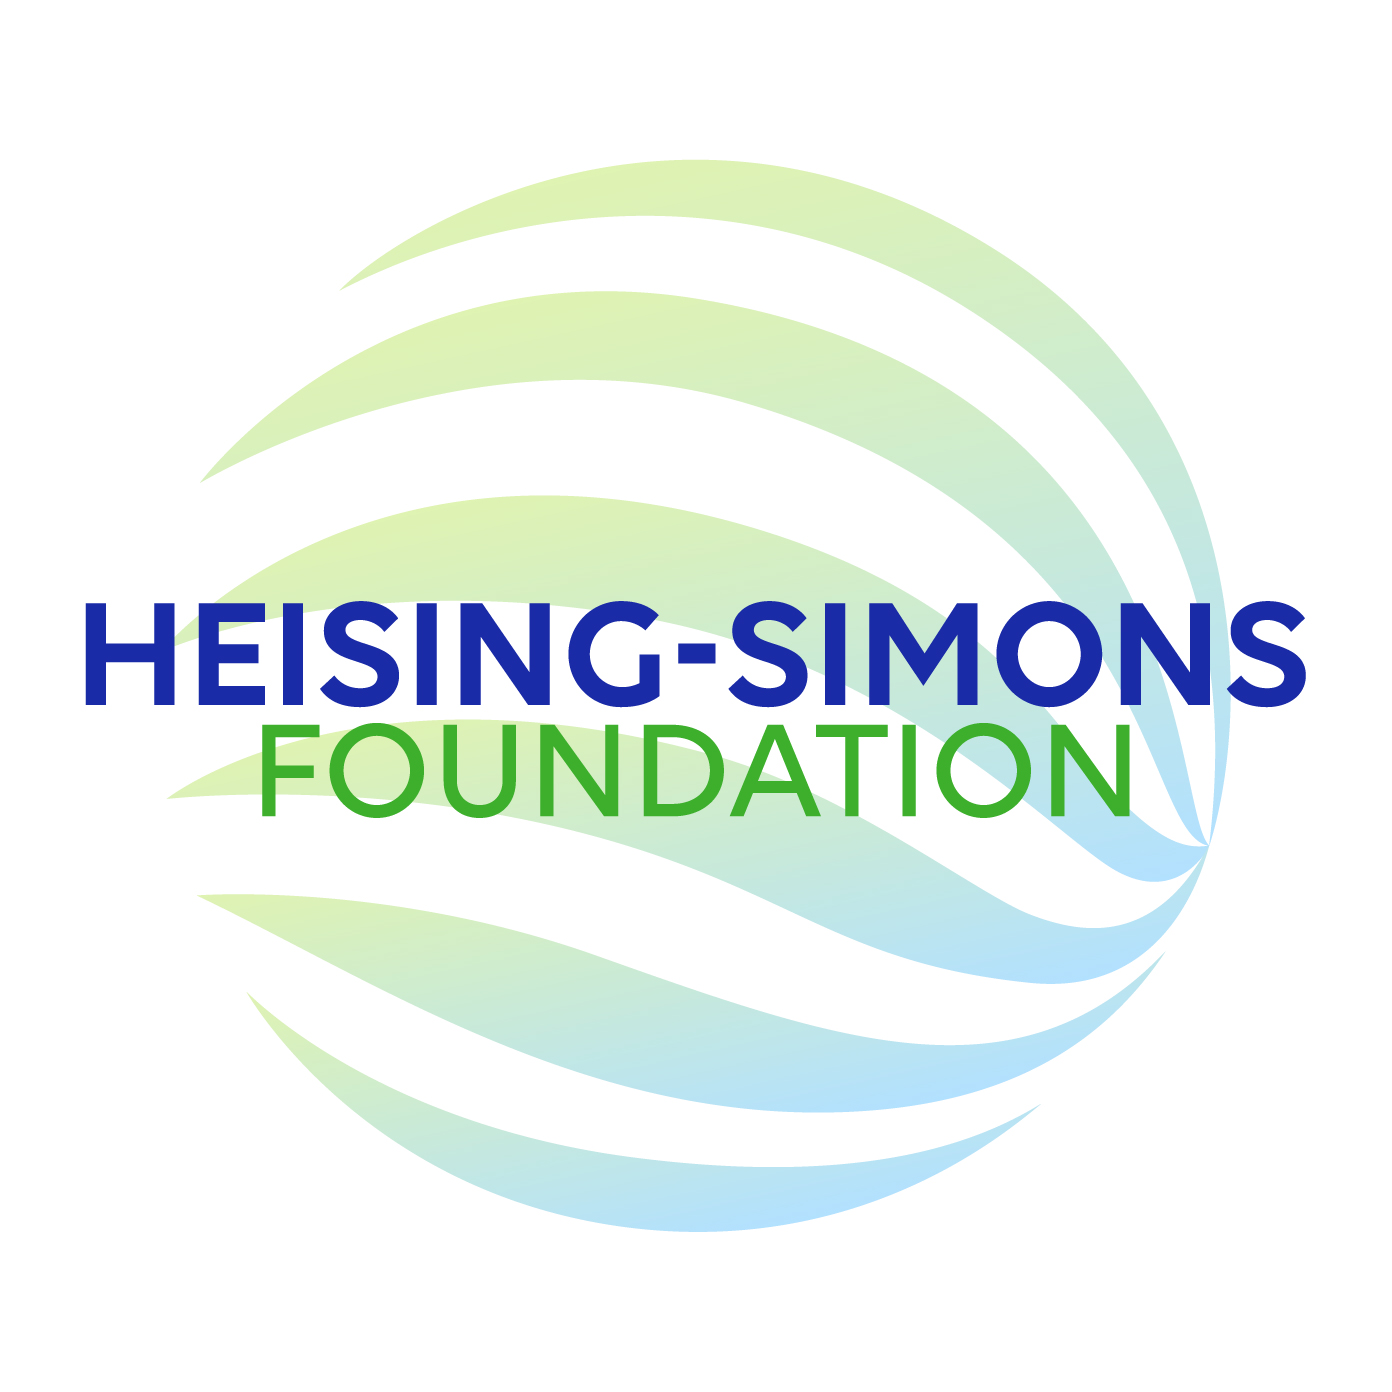 Heising Simons Foundation Grant for DREME Network